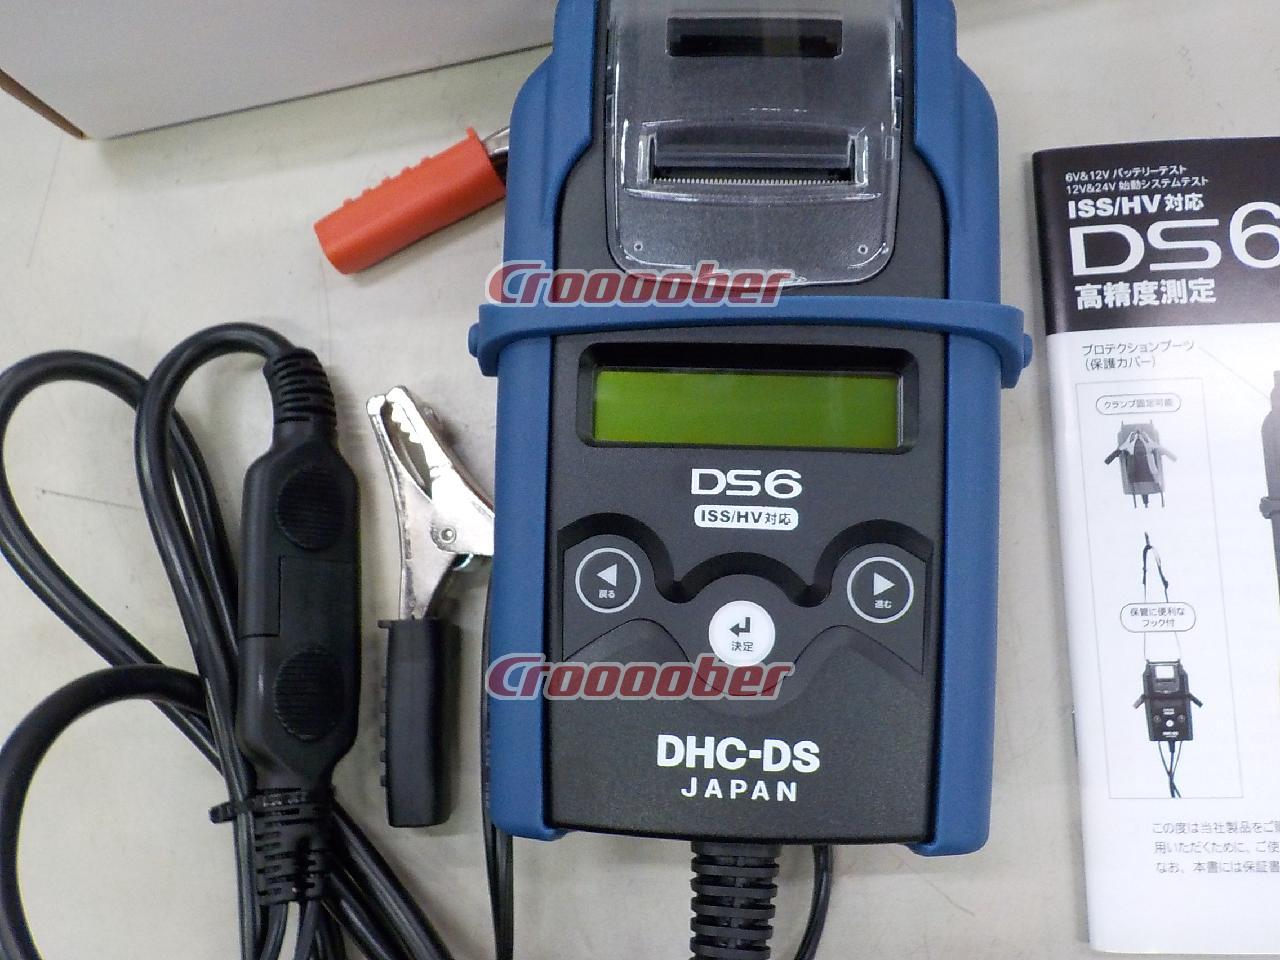 驚きの価格が実現！ DHC-DS 大作商事<BR>バッテリーテスターDS6 対応汎用感熱ロール紙コアレス <br>